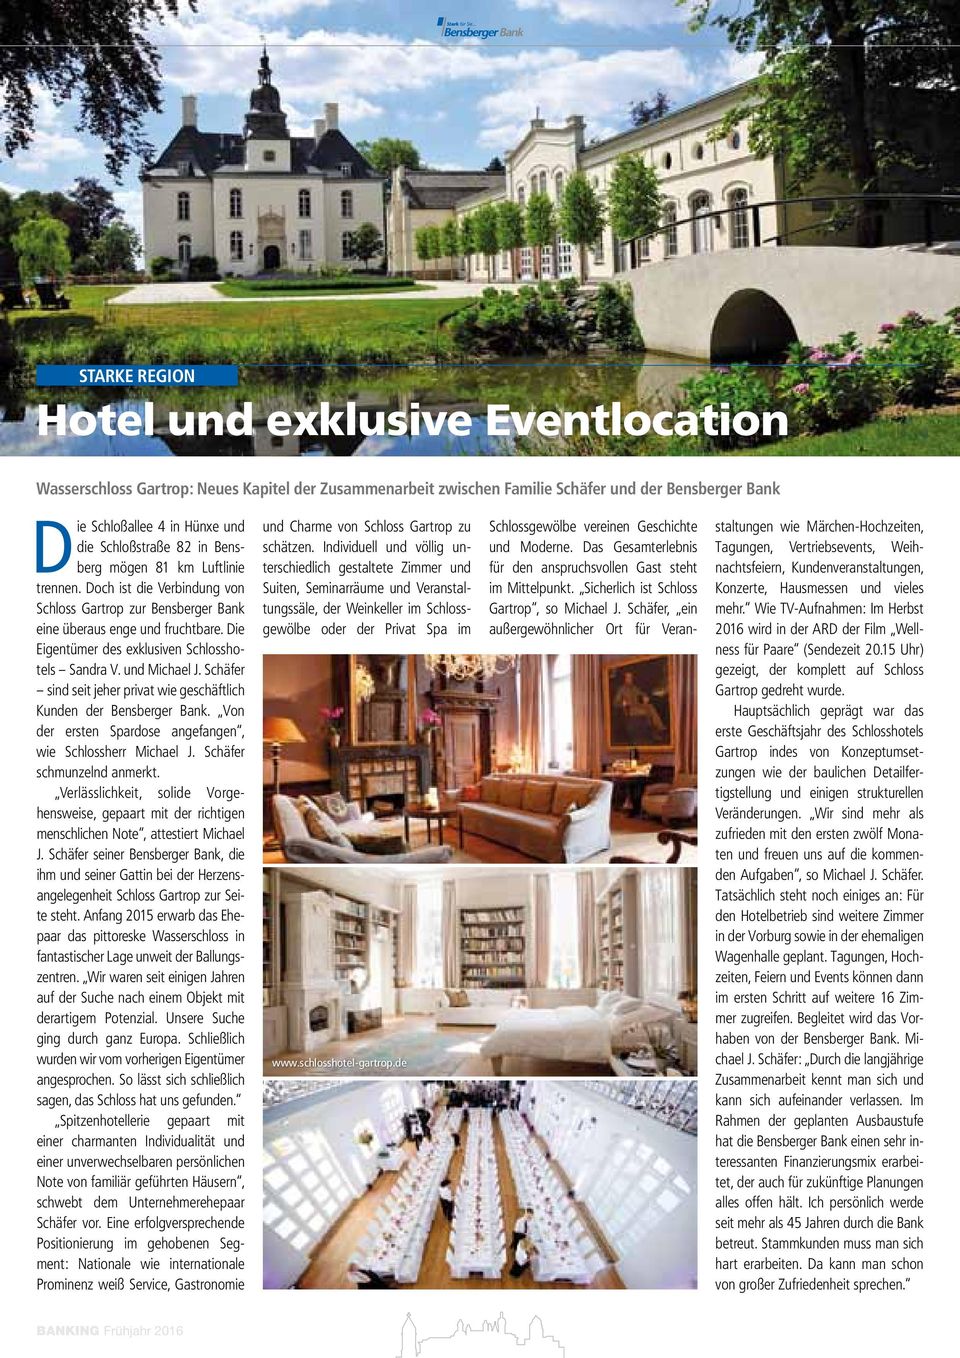 Die Eigentümer des exklusiven Schlosshotels Sandra V. und Michael J. Schäfer sind seit jeher privat wie geschäftlich Kunden der Bensberger Bank.